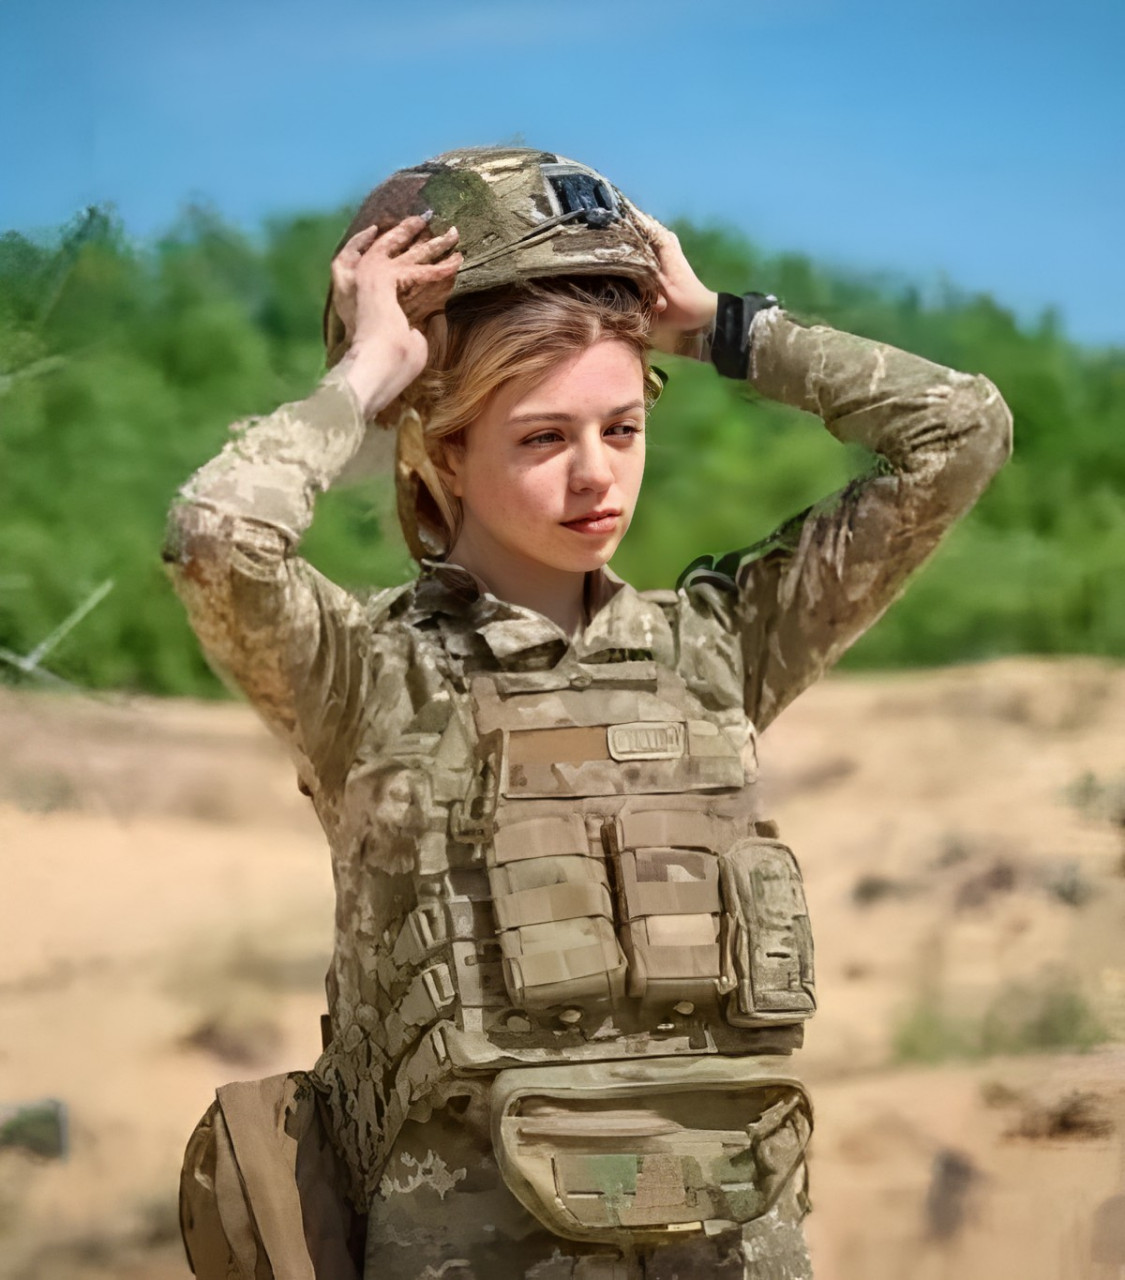 作为一名乌克兰正规女兵,埃琳娜·图拉斯此前曾在社交媒体晒出自己的